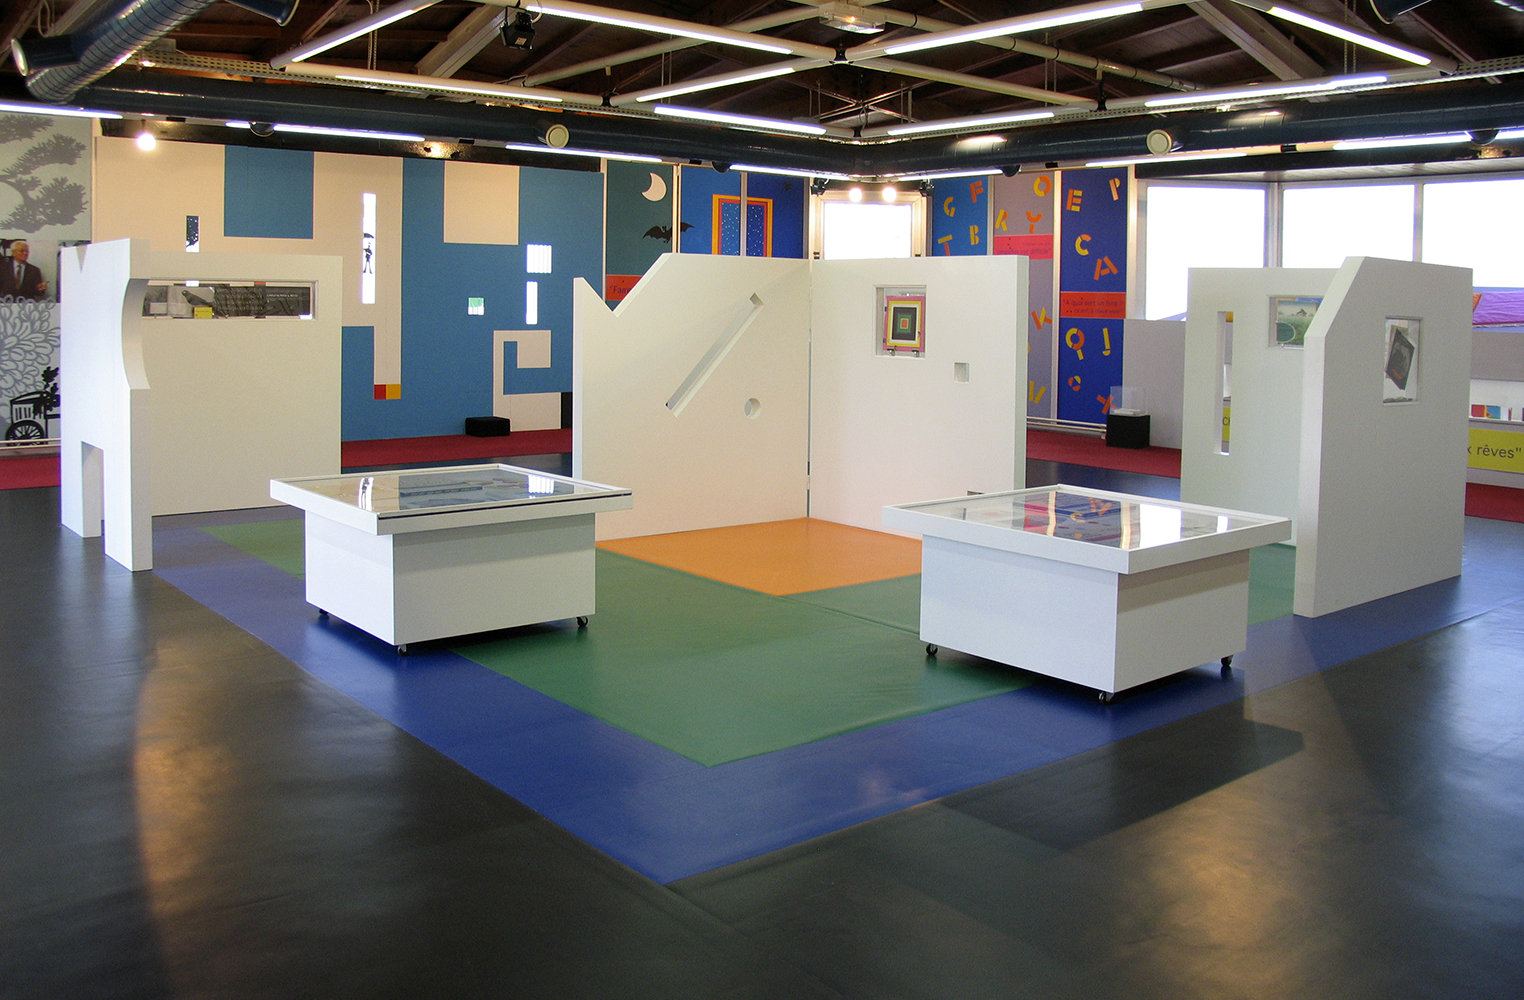 13 octobre 2007 - inauguration de l'exposition ABC D'AIR une retrospective de Bruno Munari à la bibliothèque de Pantin dans le cadre du salon du livre de Montreuil